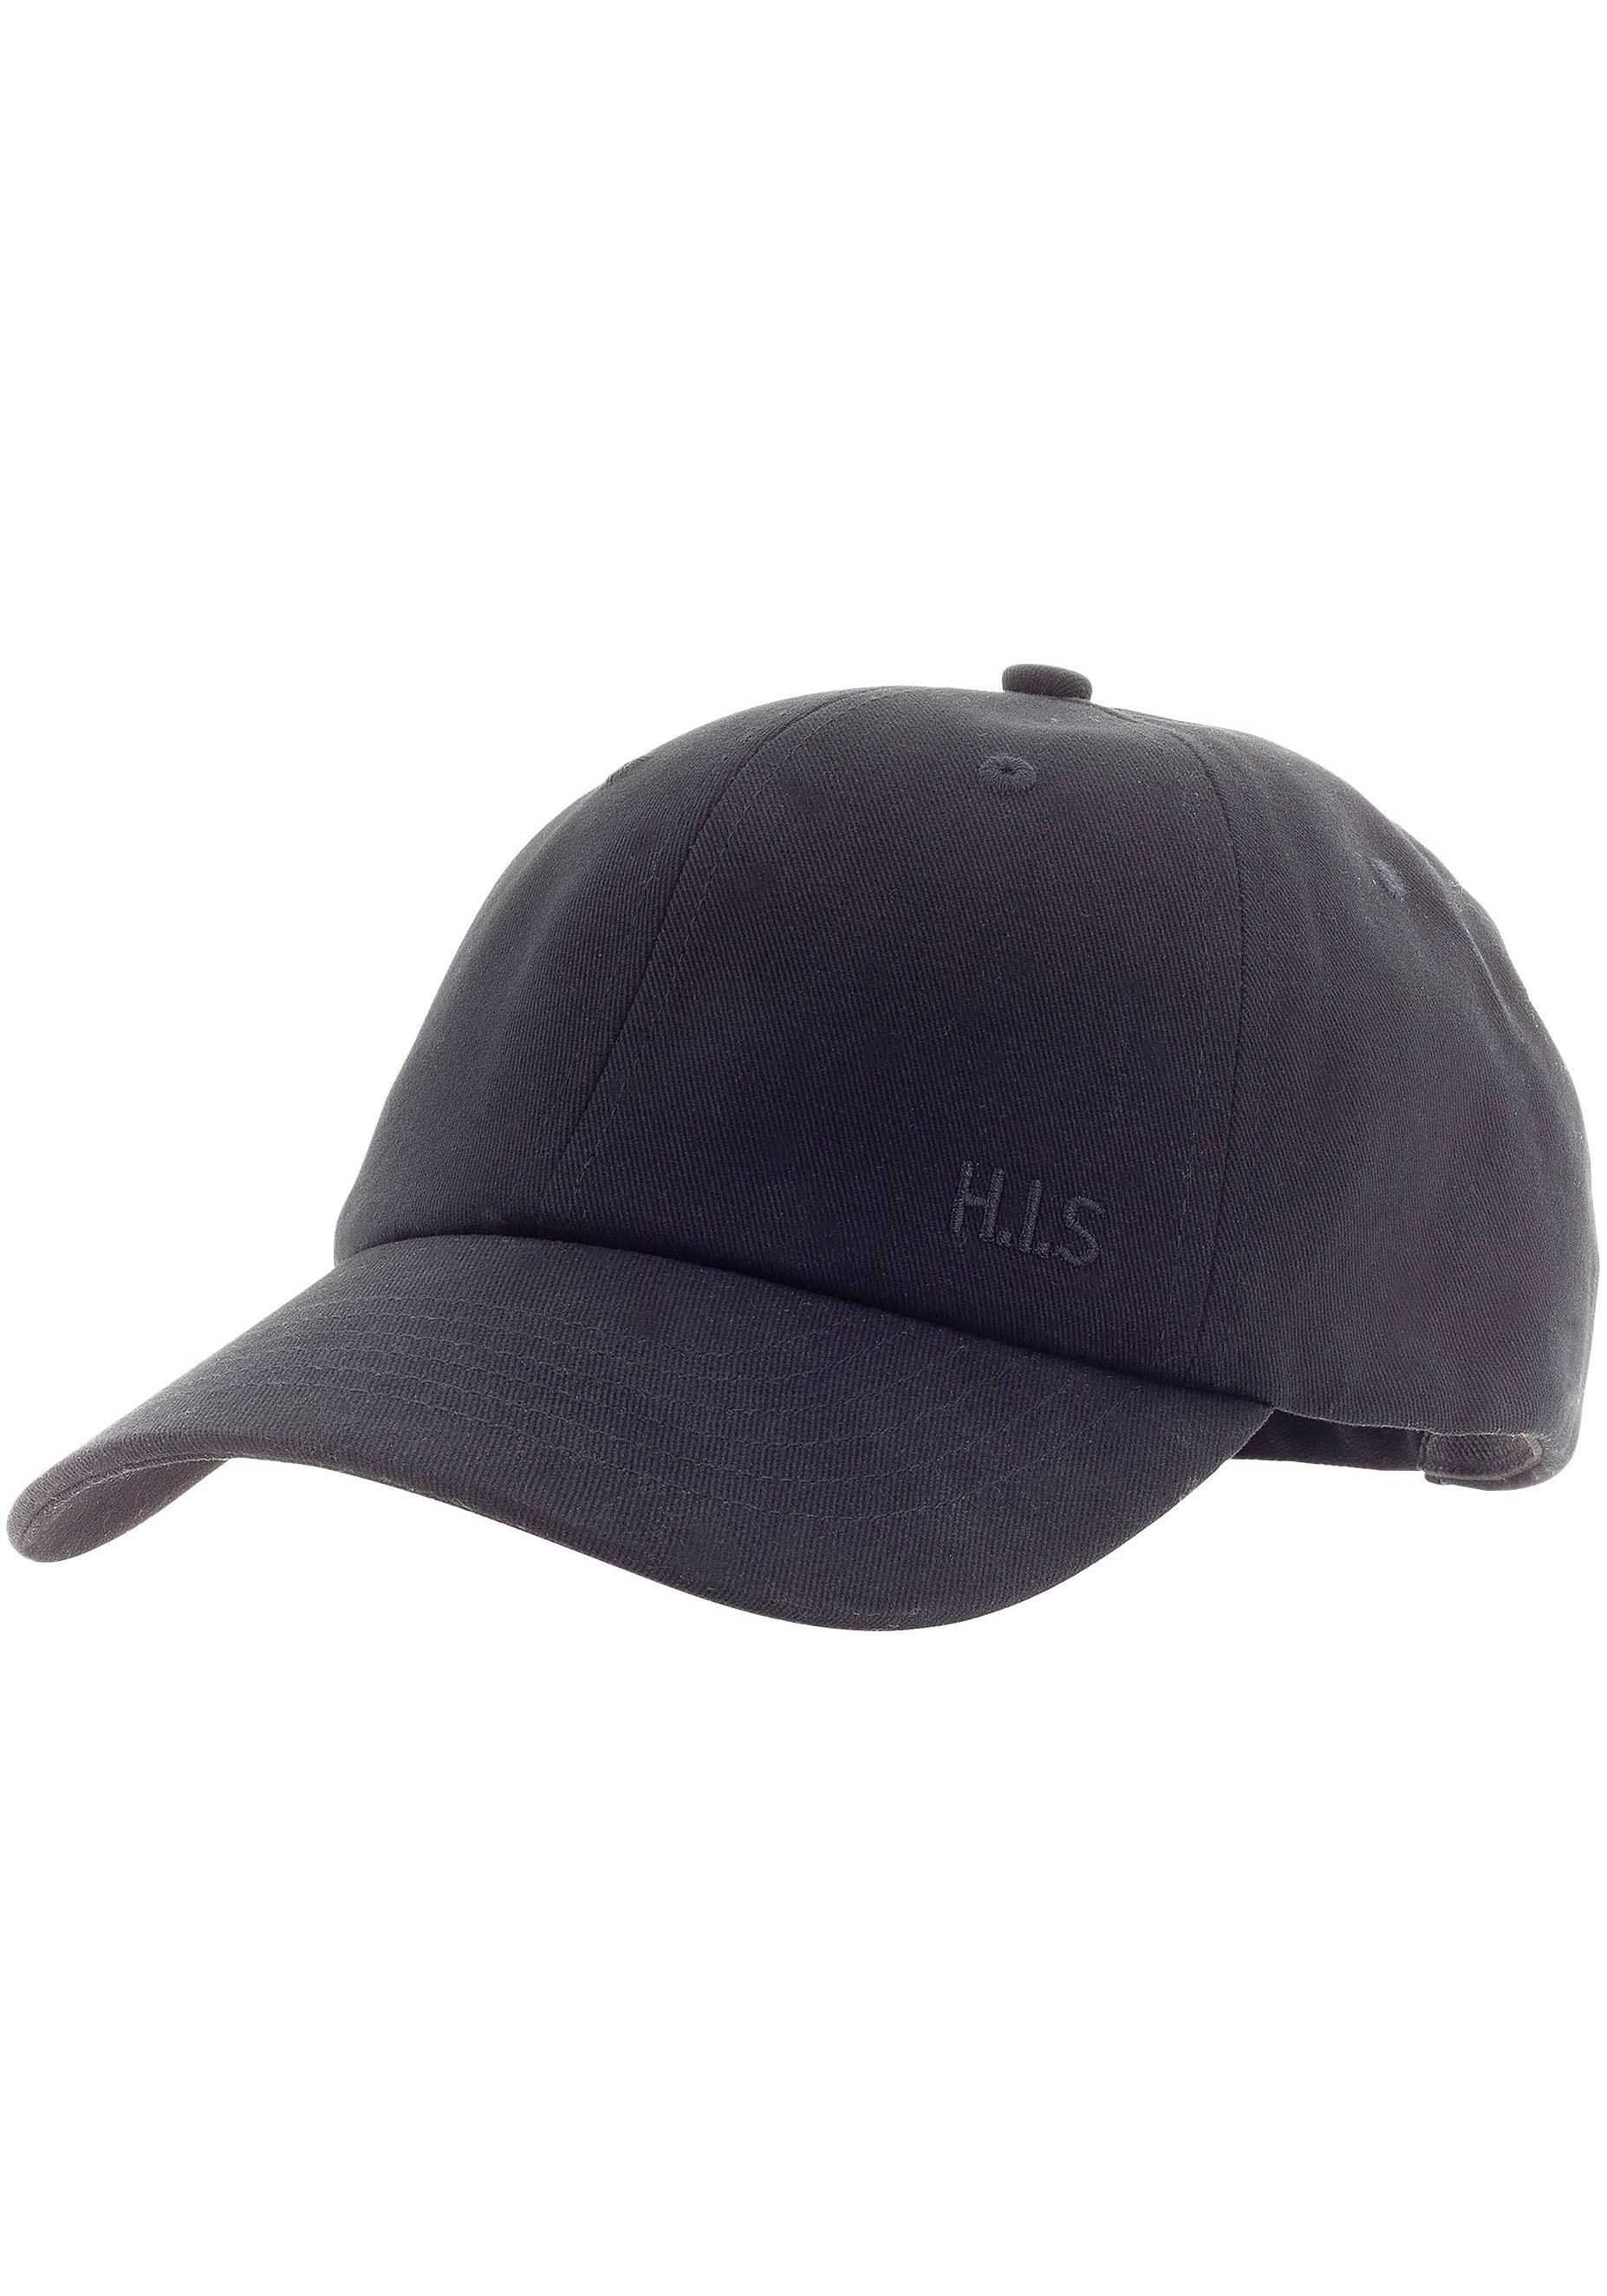 H.I.S Baseball Cap, Baumwollcap mit leichten Verwaschungen und H.I.S.  Stickerei online bei UNIVERSAL